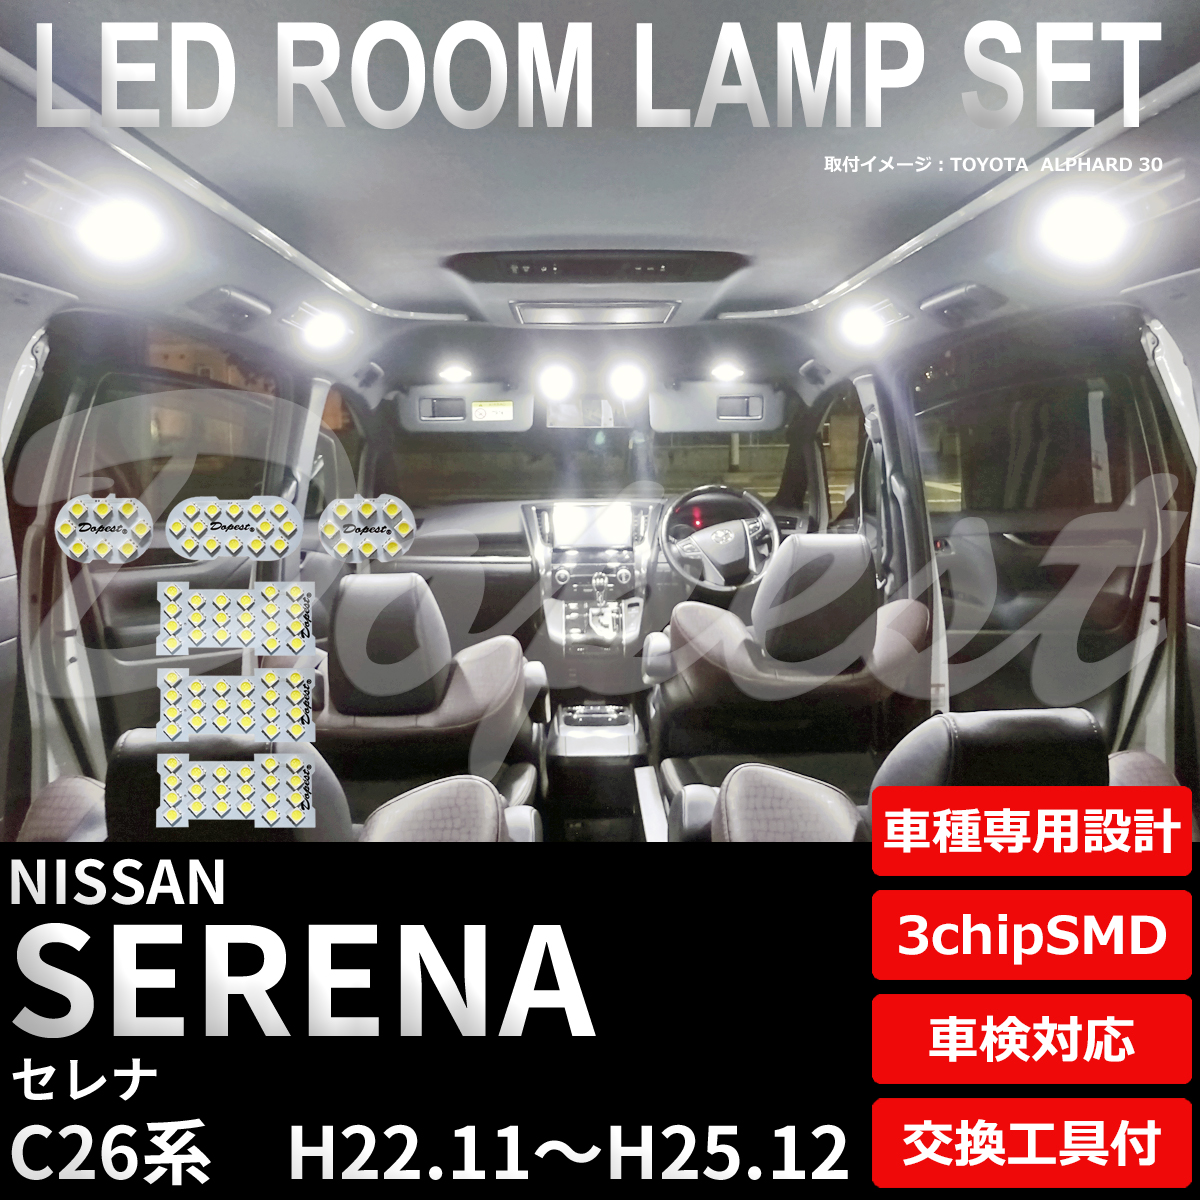 セレナ LEDルームランプセット C26系 車内灯 室内灯